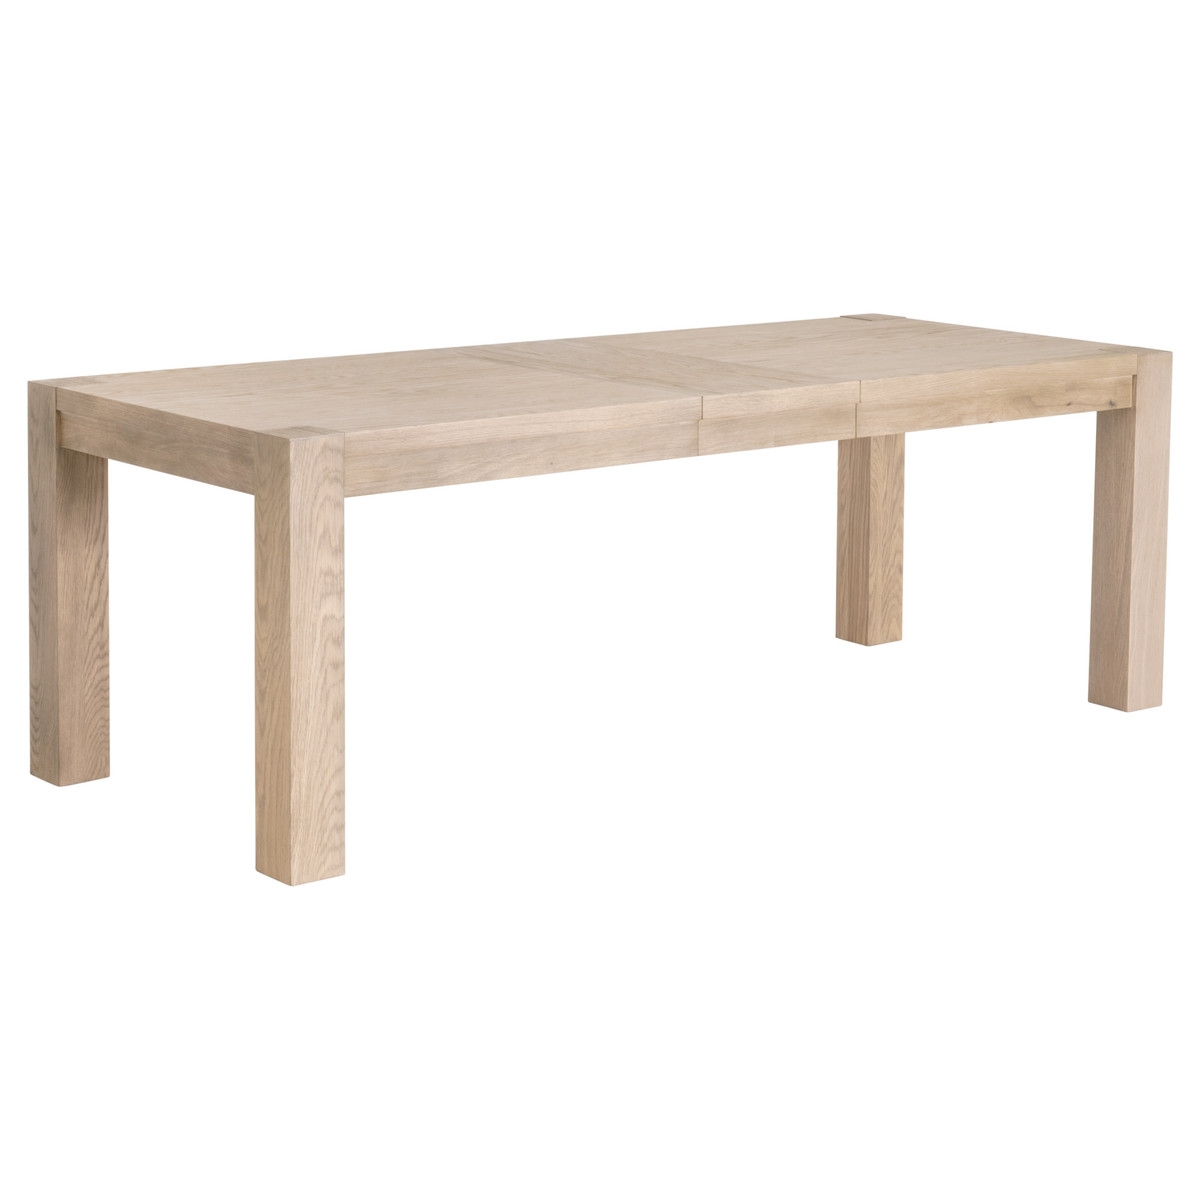 Adler Extension Dining Table /Light Honey Oak - Image 4